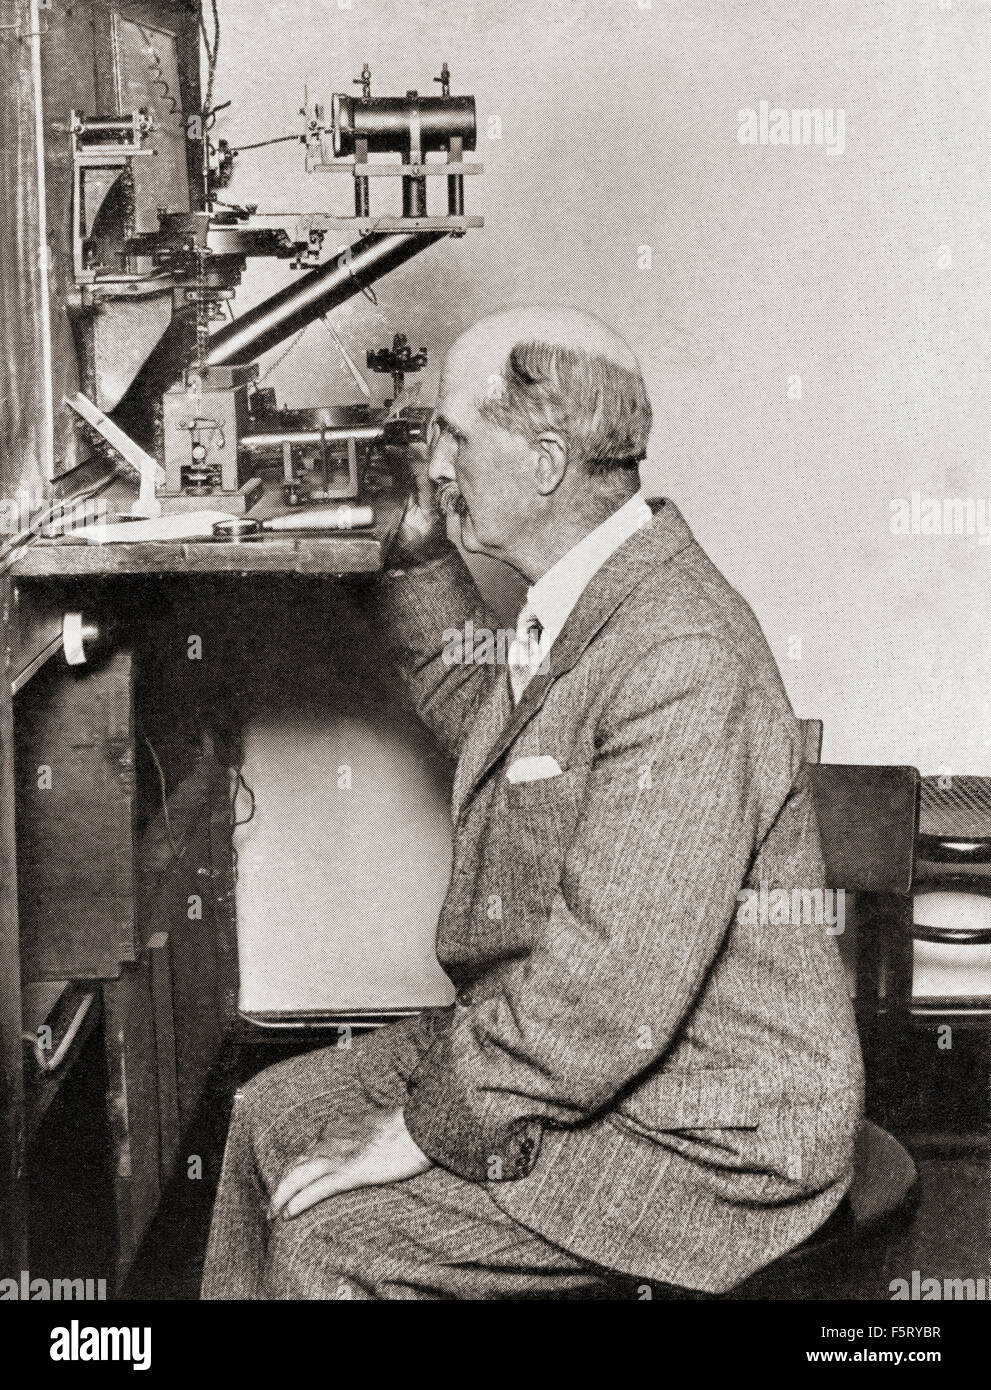 Sir William Henry Bragg, 1862 – 1942.  Britischer Physiker, Chemiker, Mathematiker und Sportler. Gewinner des 1915 den Nobelpreis für Physik, zusammen mit seinem Sohn William Lawrence Bragg. Stockfoto